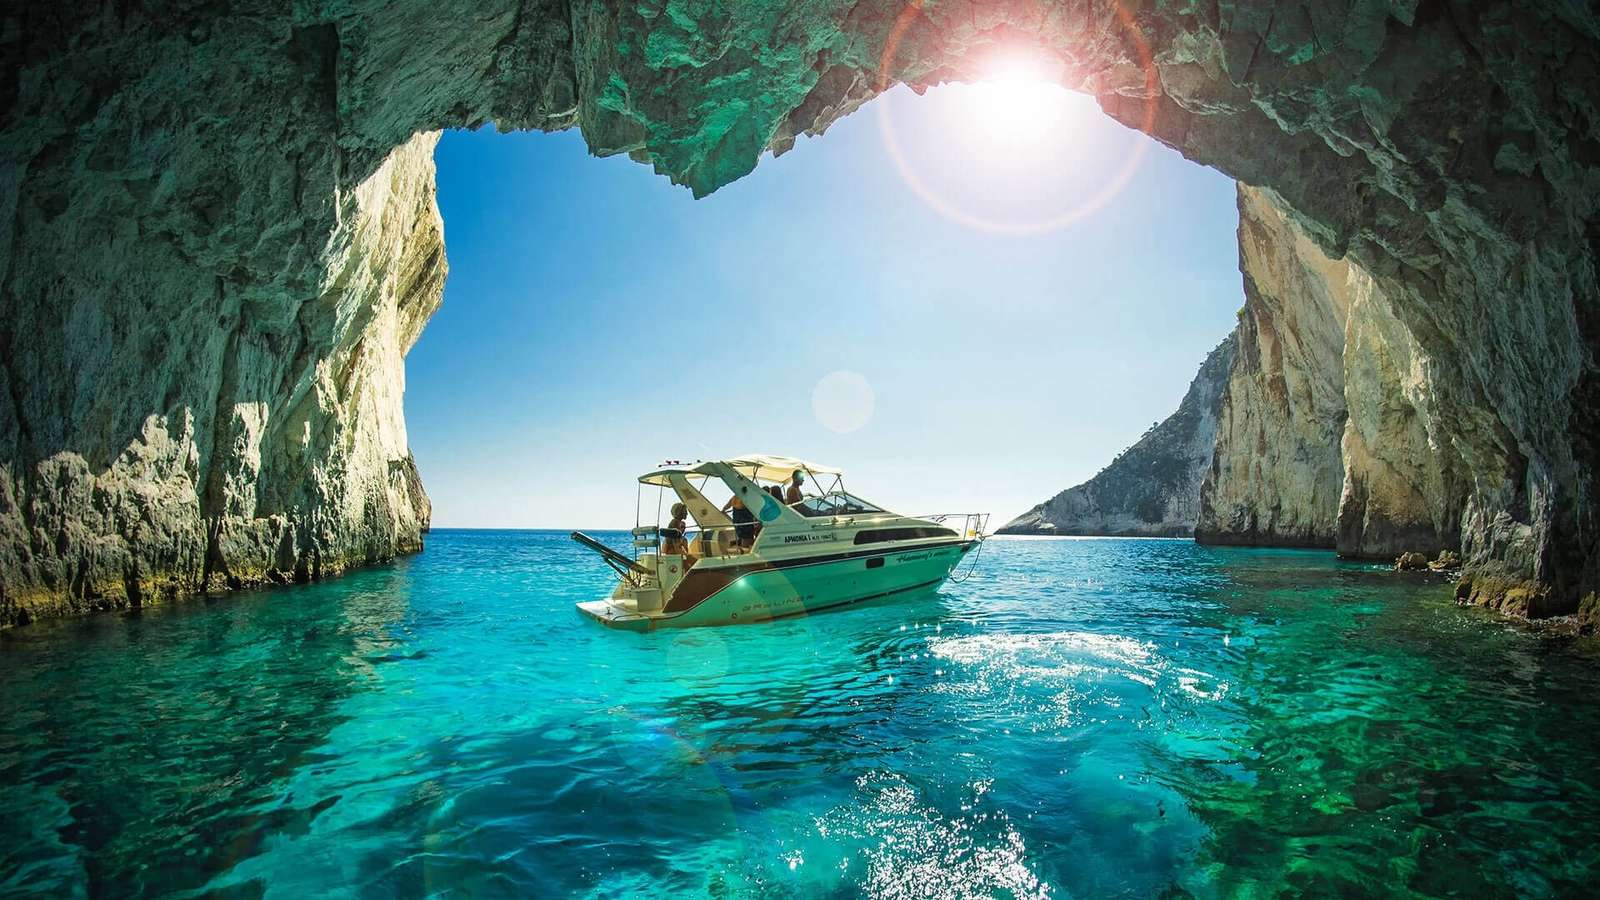 Grotto, tenger és a nyár ízlése kirakós online